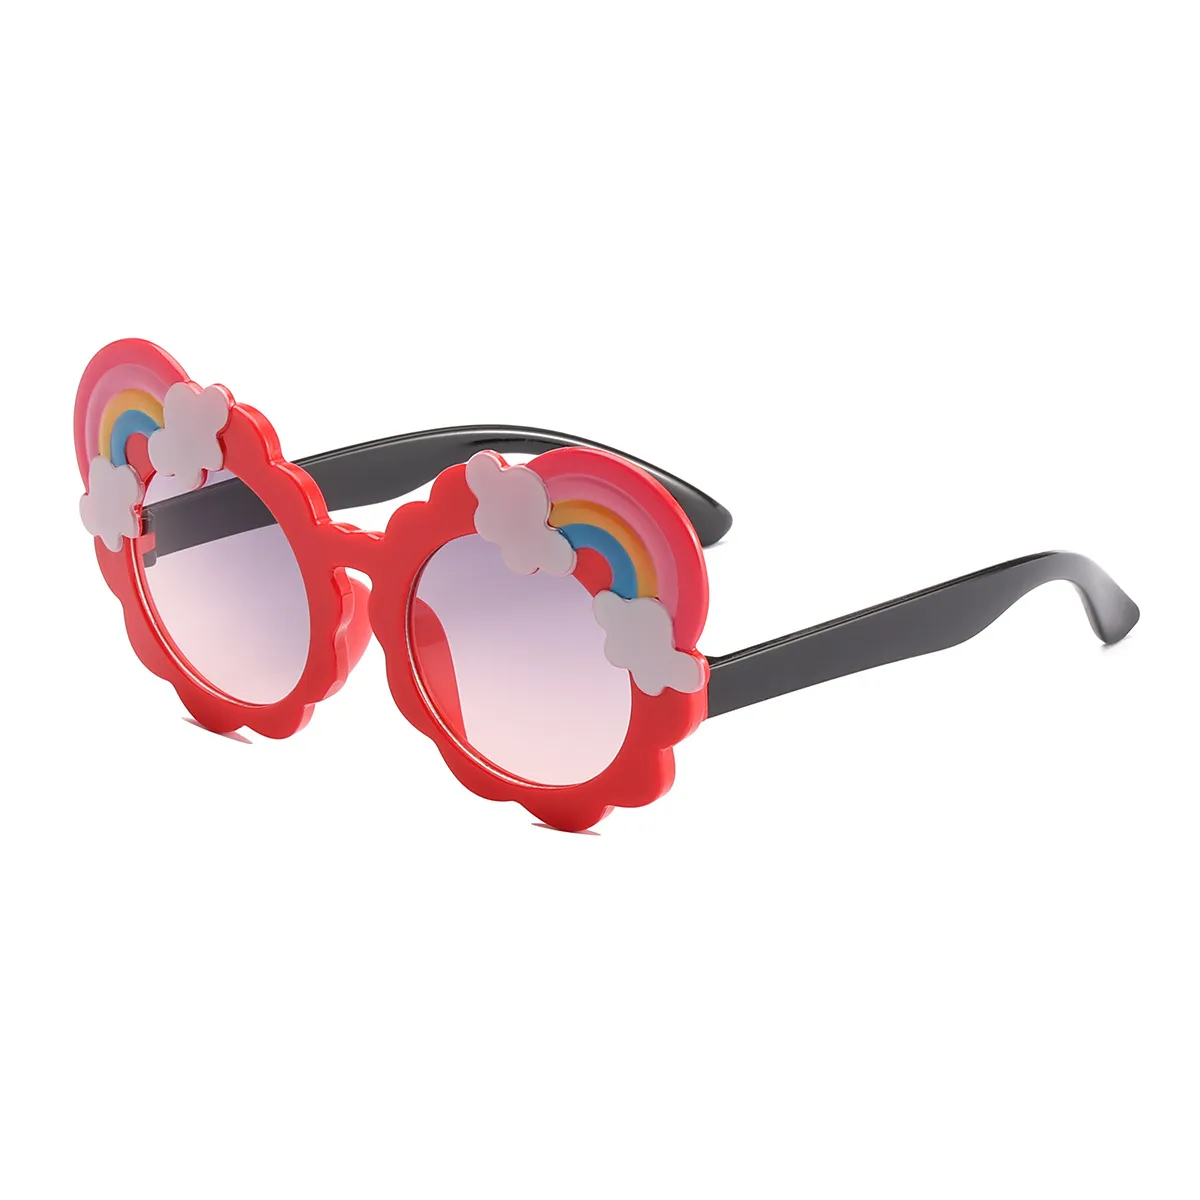 نظارات كرتونية للأطفال بألوان قوس قزح مزخرفة (مع علبة نظارة) أحمر big image 1